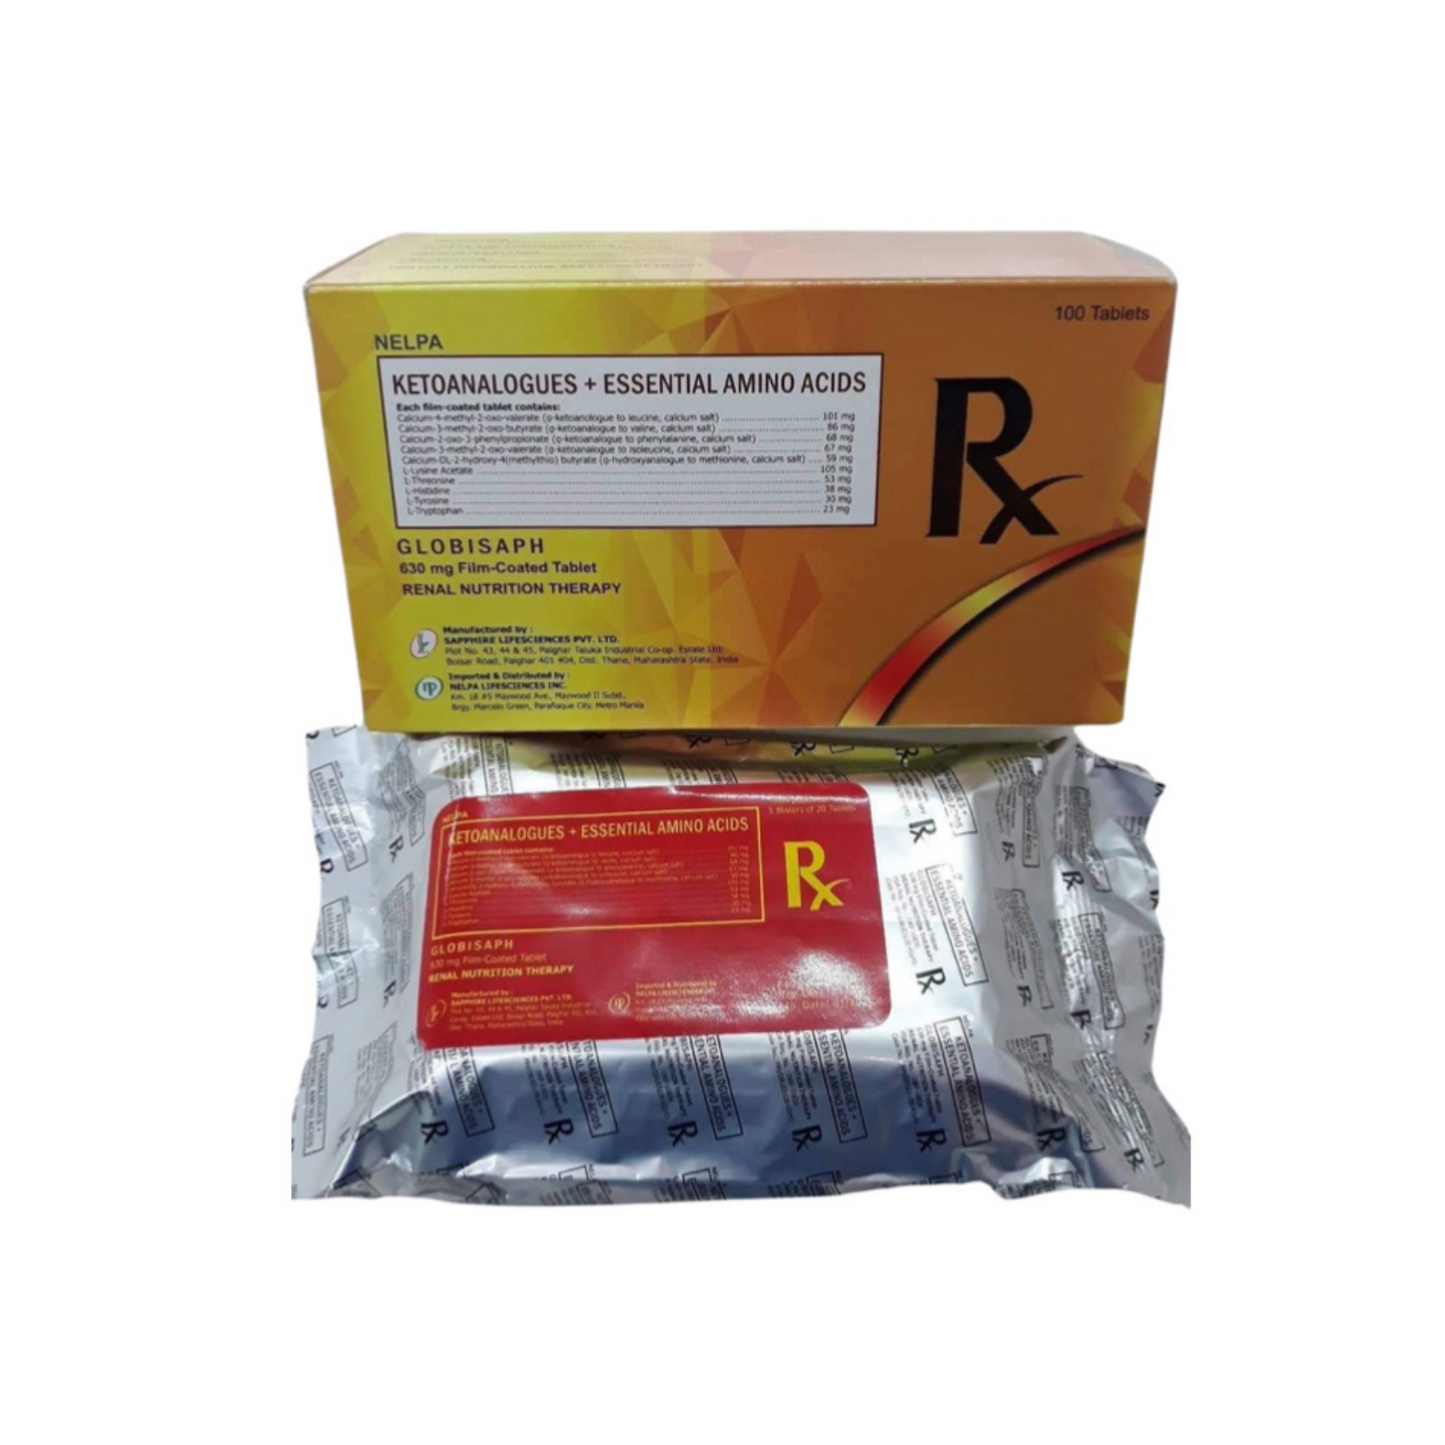 RENOGUARD Ketoanalogues + Essential Amino Acids Tablet x 1